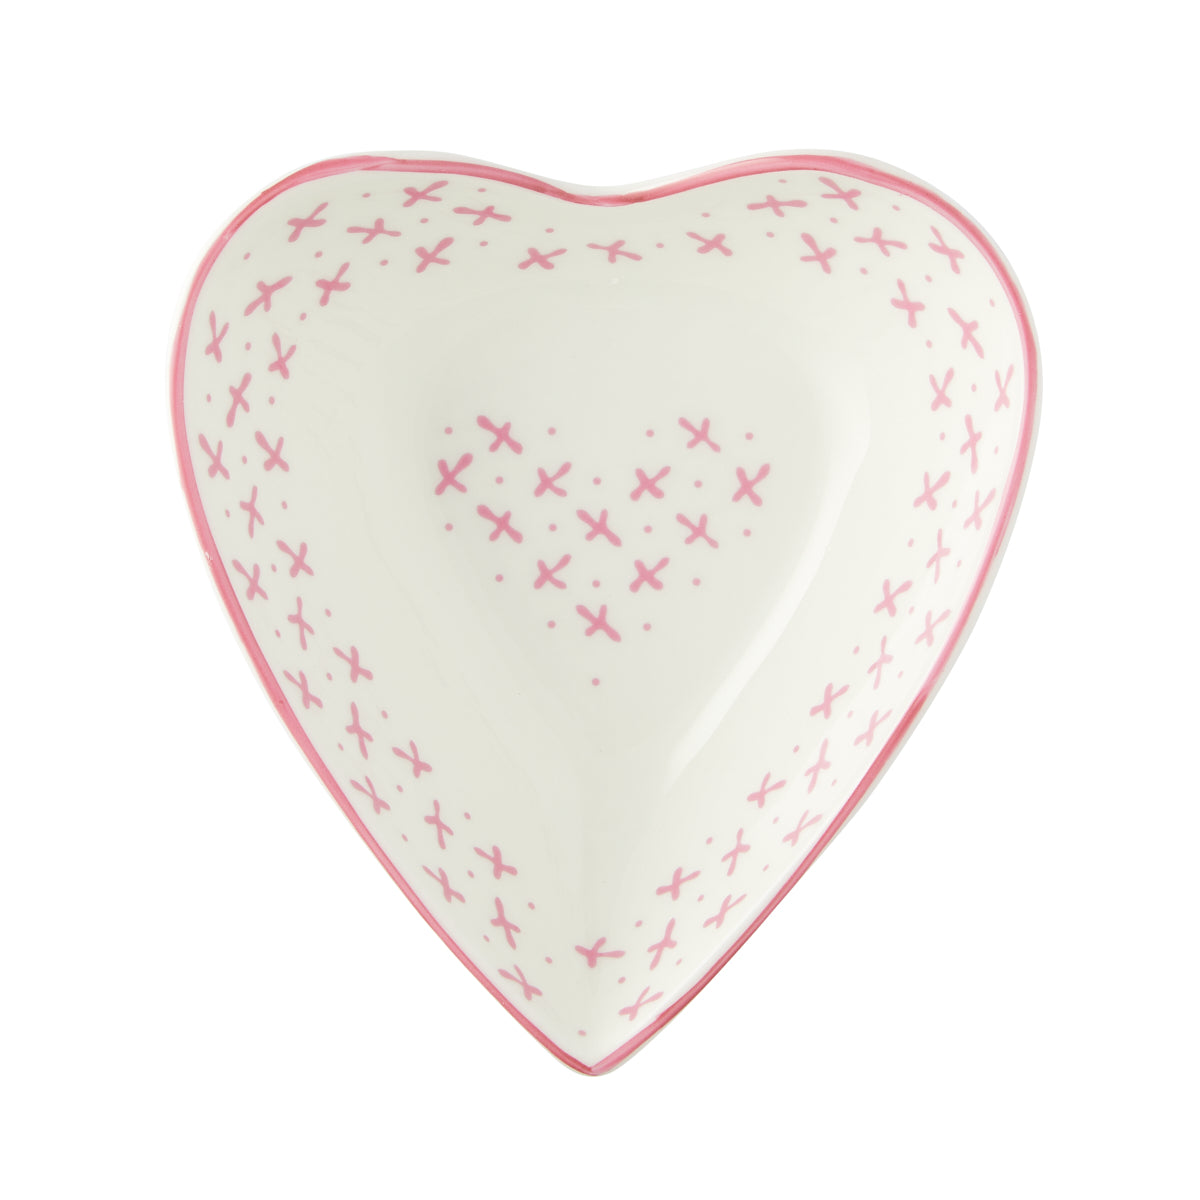 Nina Campbell Small Heart Dish - Pink Sprig